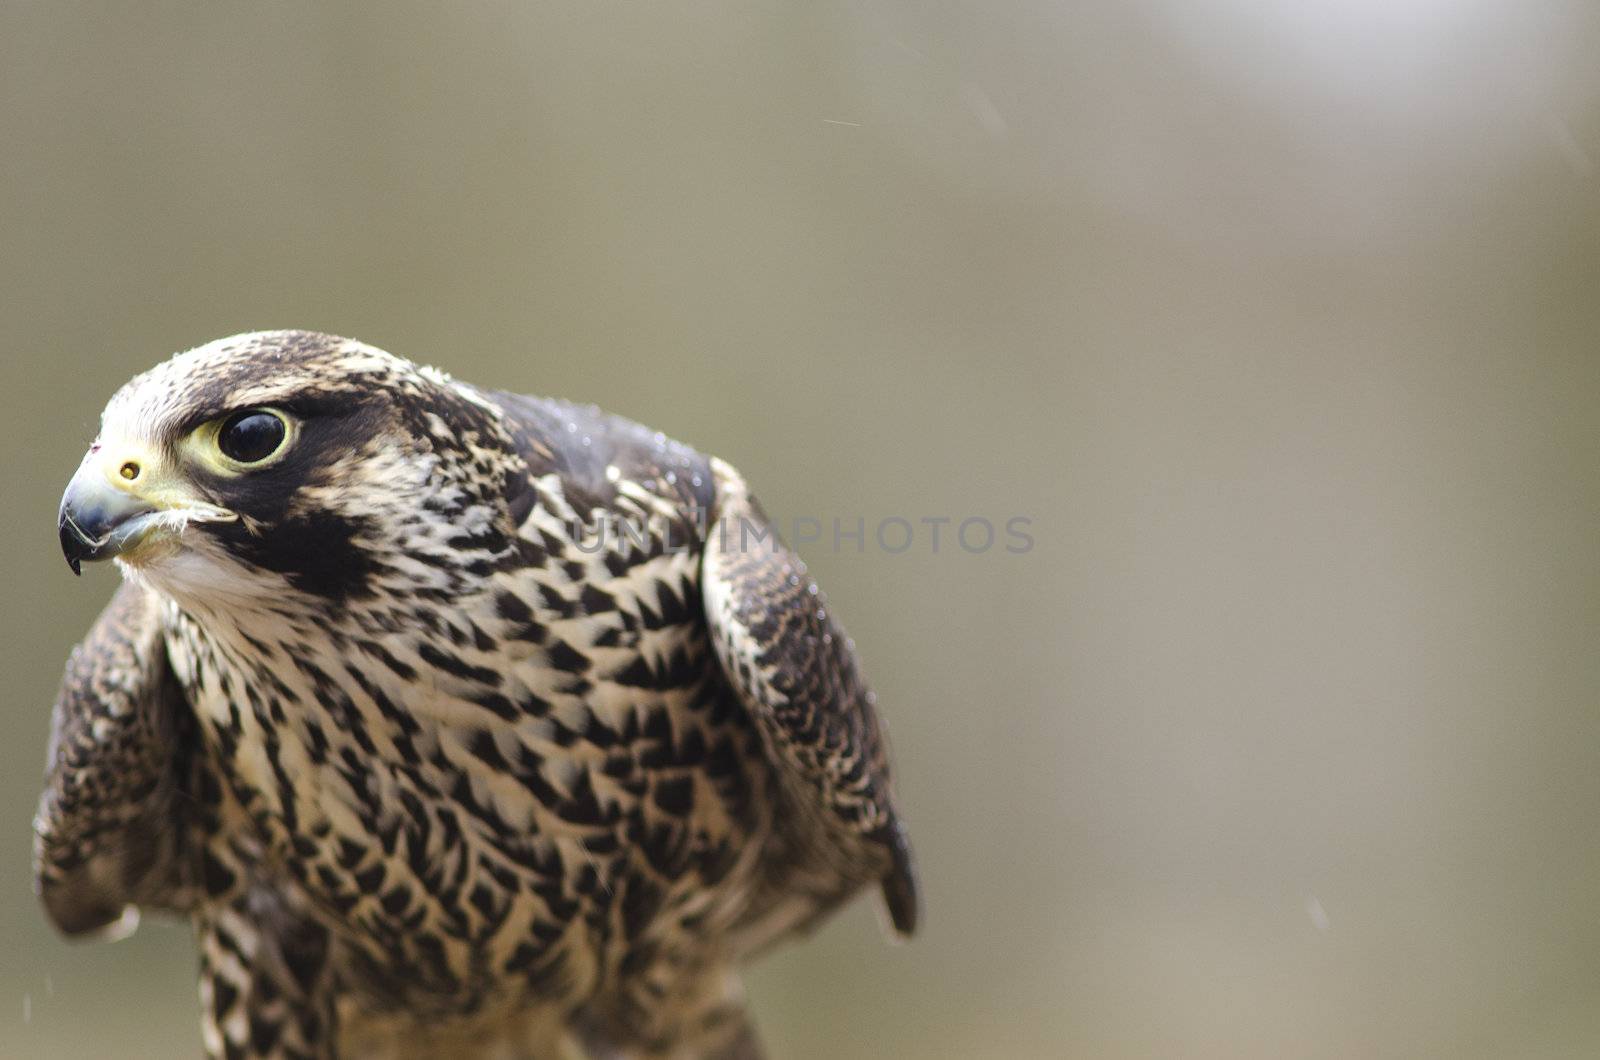 Young Merlin, Falco columbarius by Arrxxx